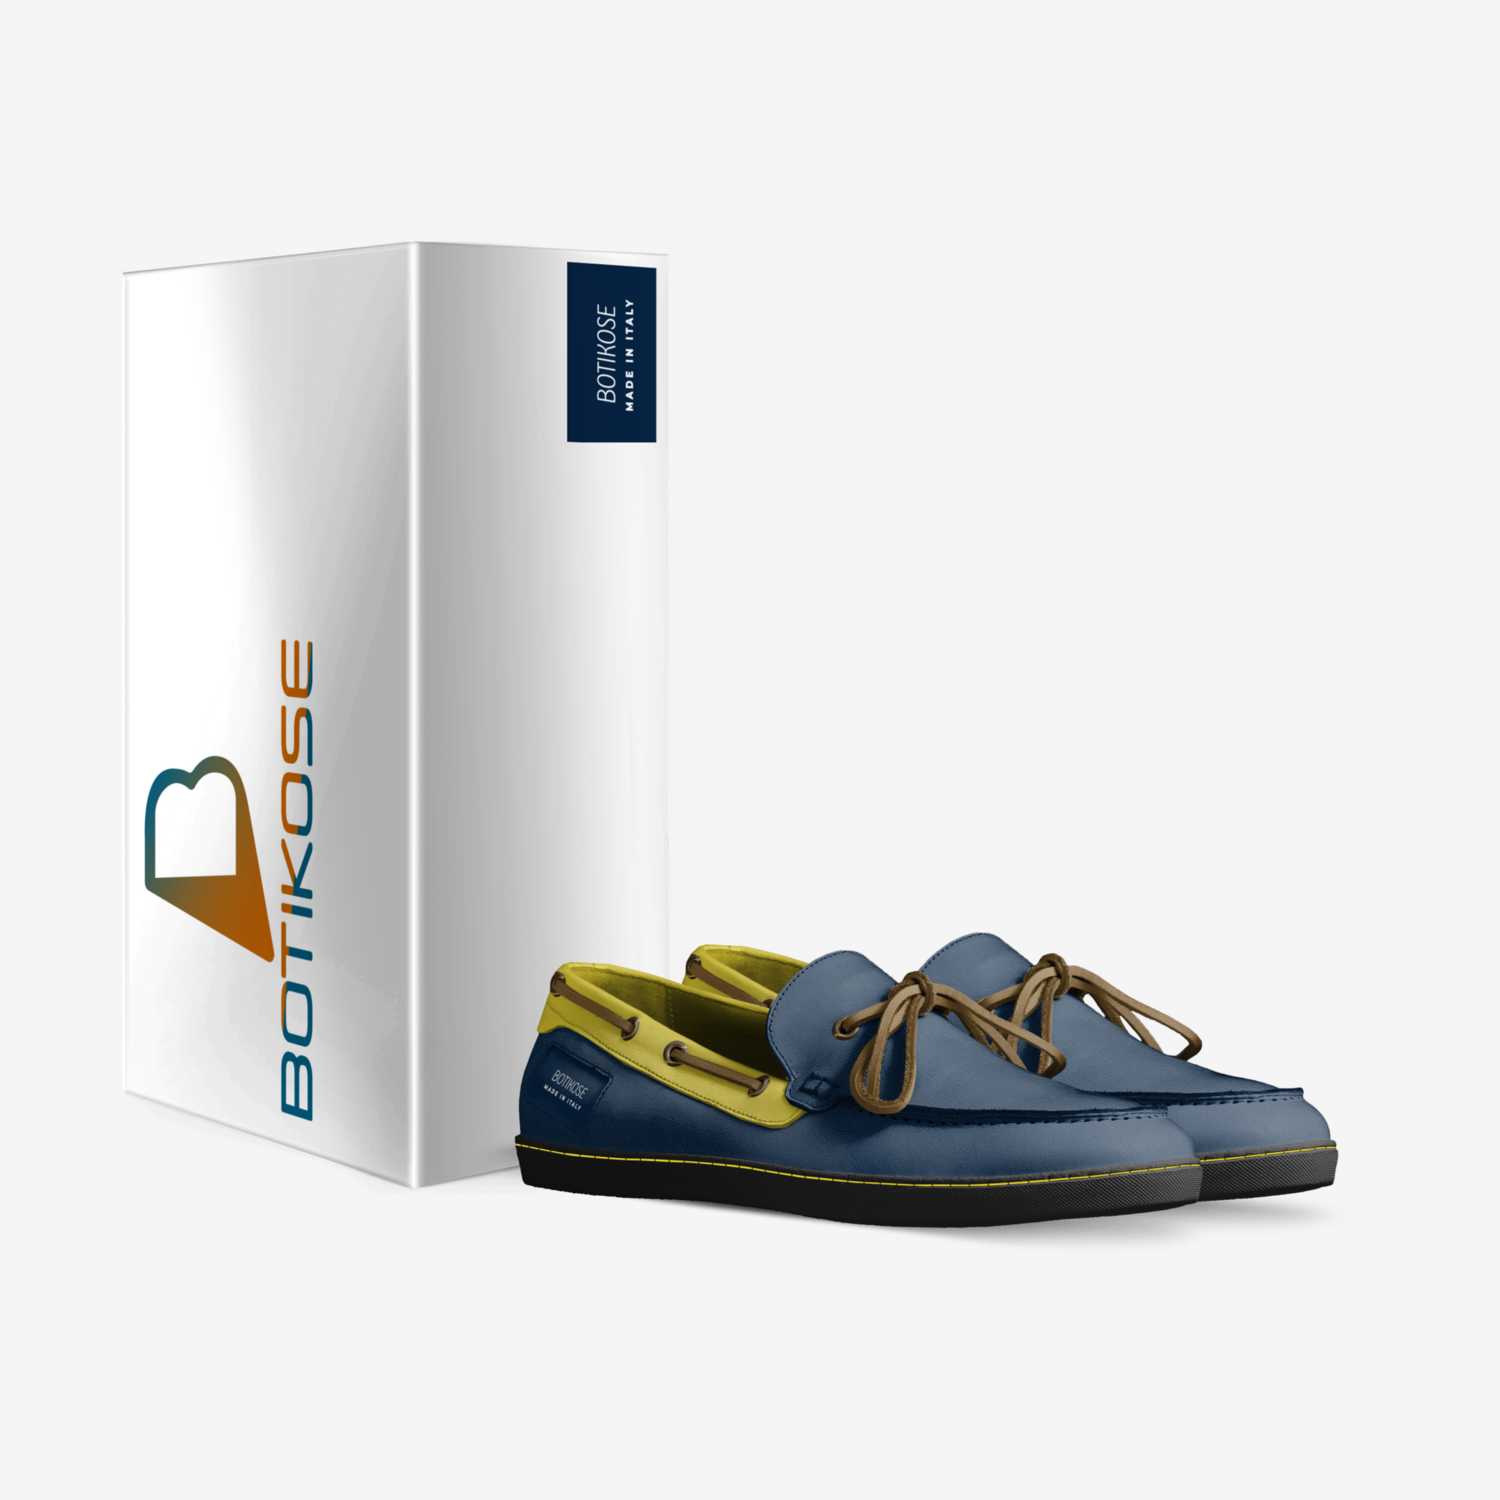 BOTIKOSE custom made in Italy shoes by Armando Daza | Box view